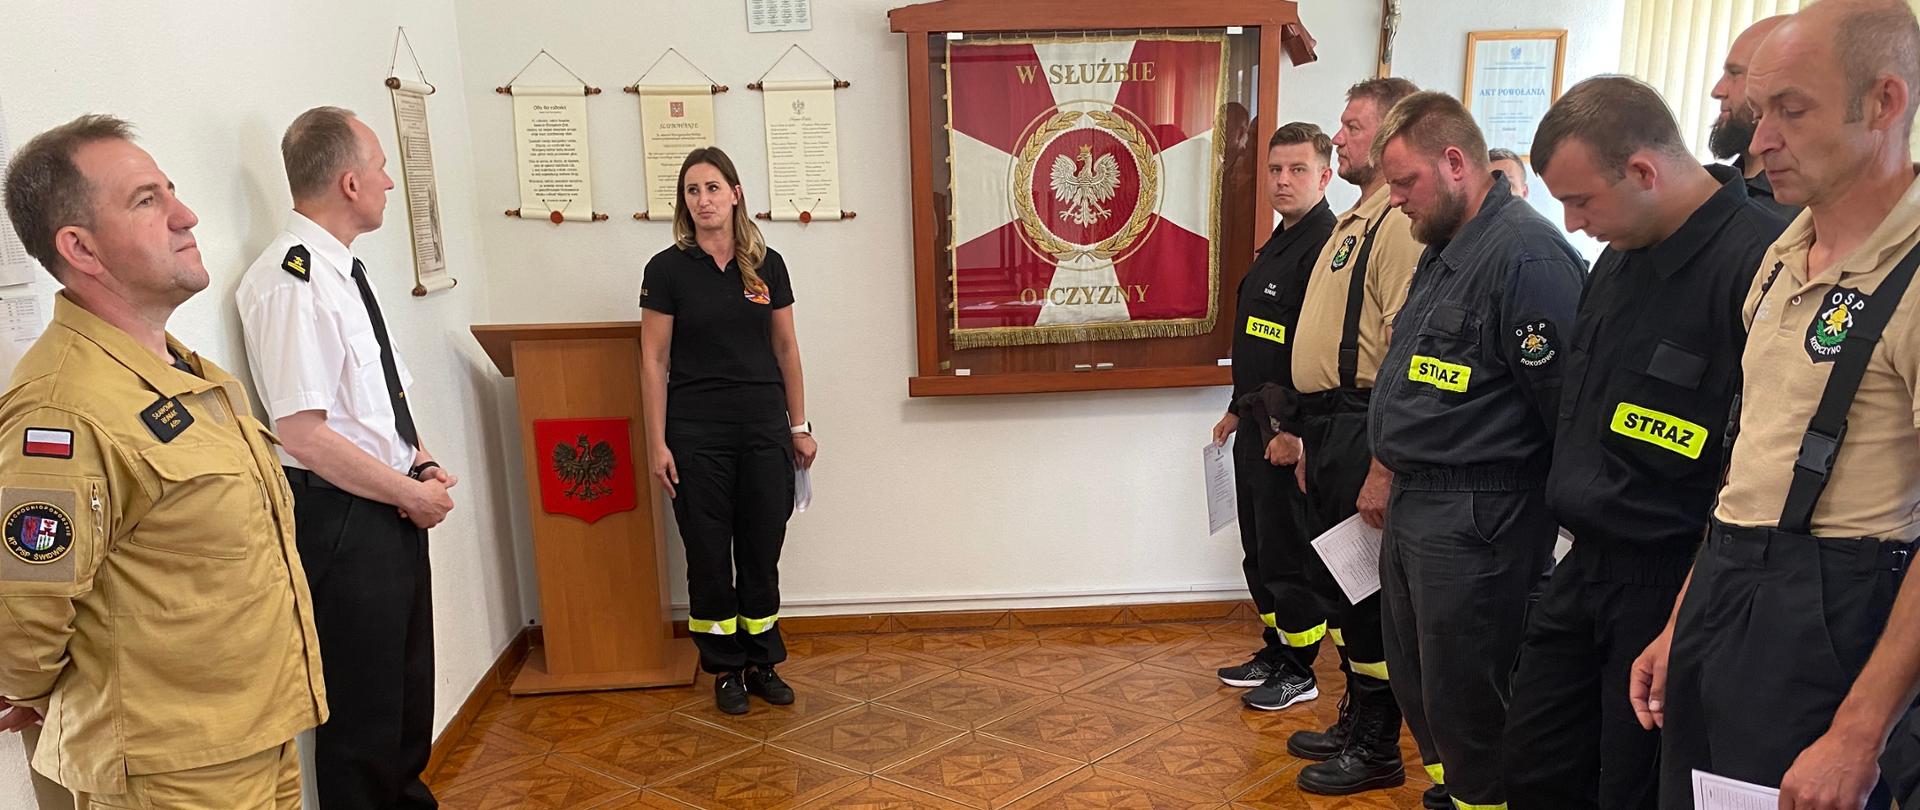 Zdjęcie przedstawia Zakończenie szkolenia kierującego działaniem ratowniczym dla strażaka ratownika Ochotniczych Straży Pożarnych (Dowódcy OSP). strażacy stoją w dwu szeregu ze świadectwami w ręku na środku kobieta przemawia.